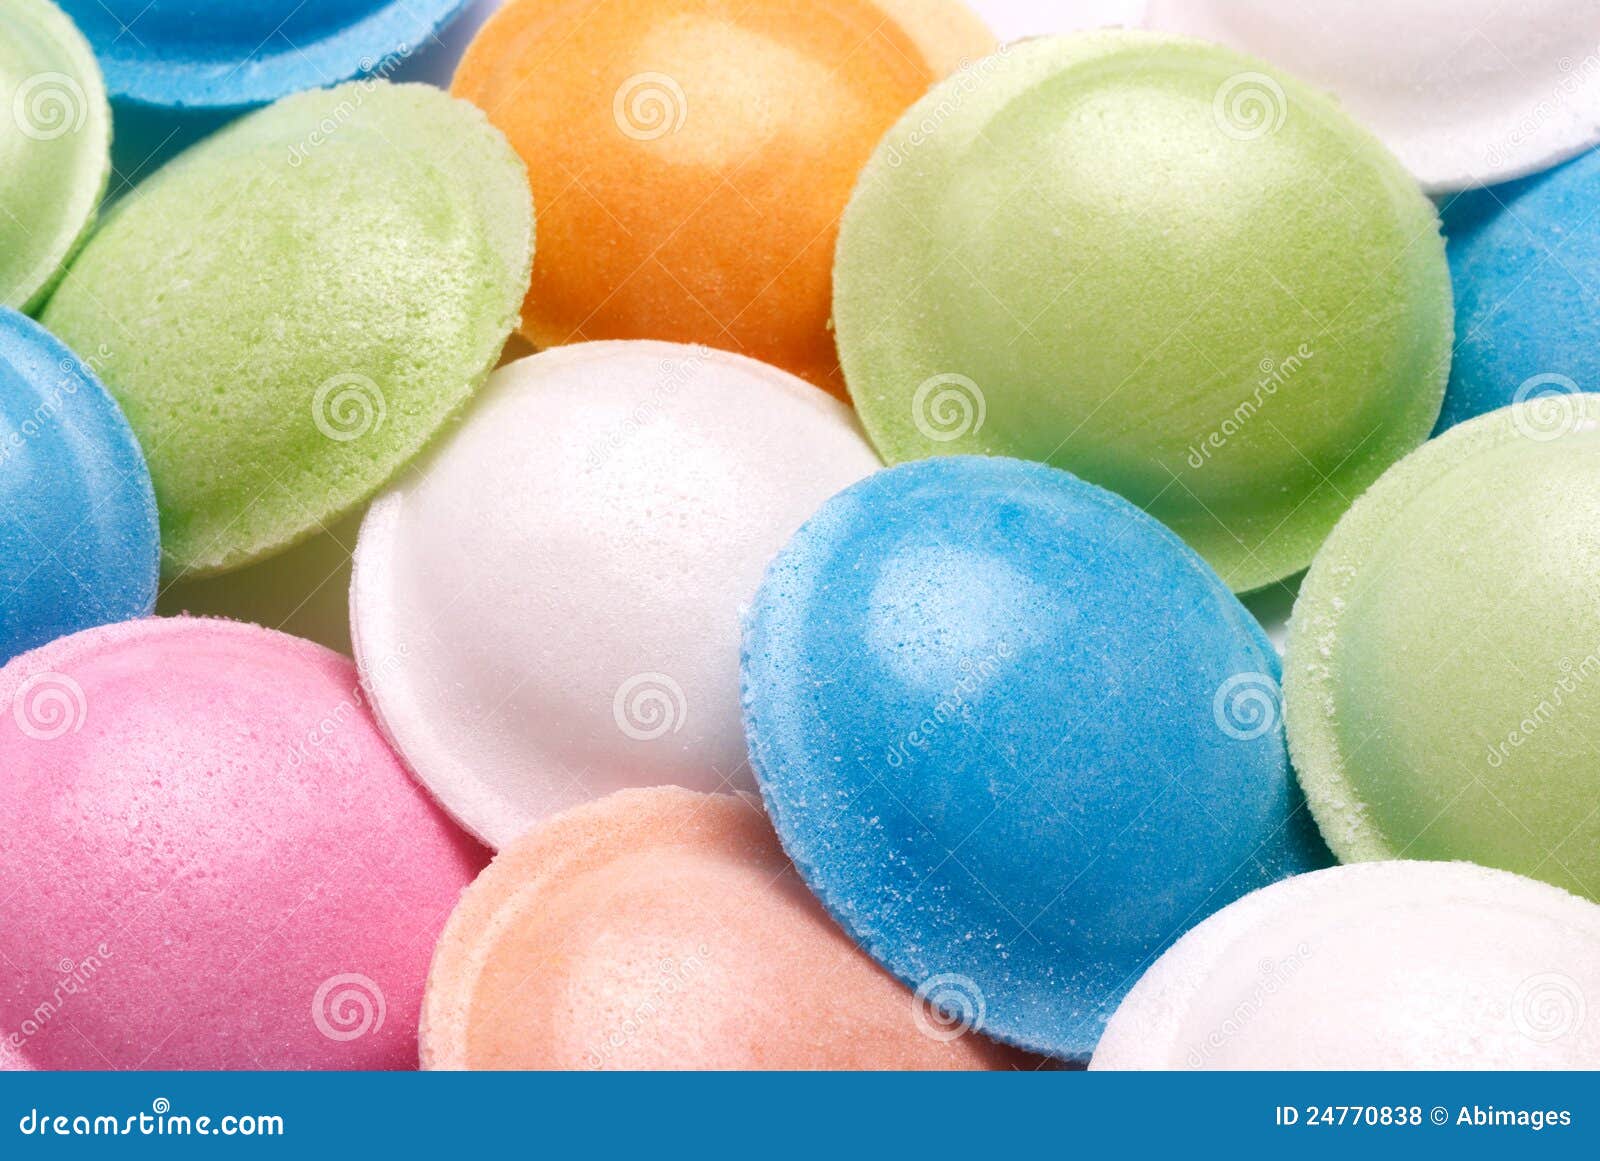 Bonbons à soucoupe en vol photo stock. Image du papier - 24770838